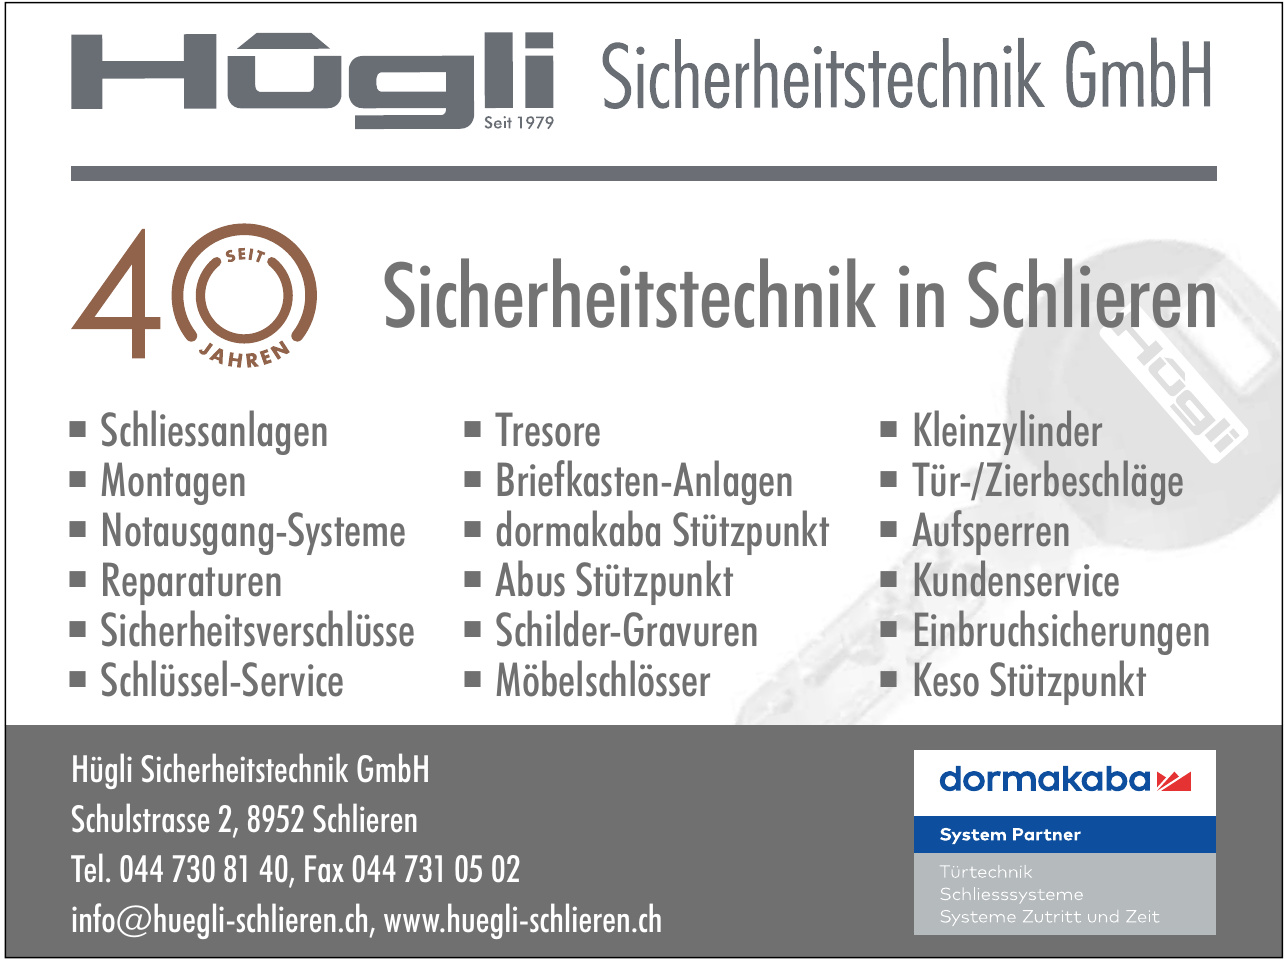 Hügli Sicherheitstechnik GmbH